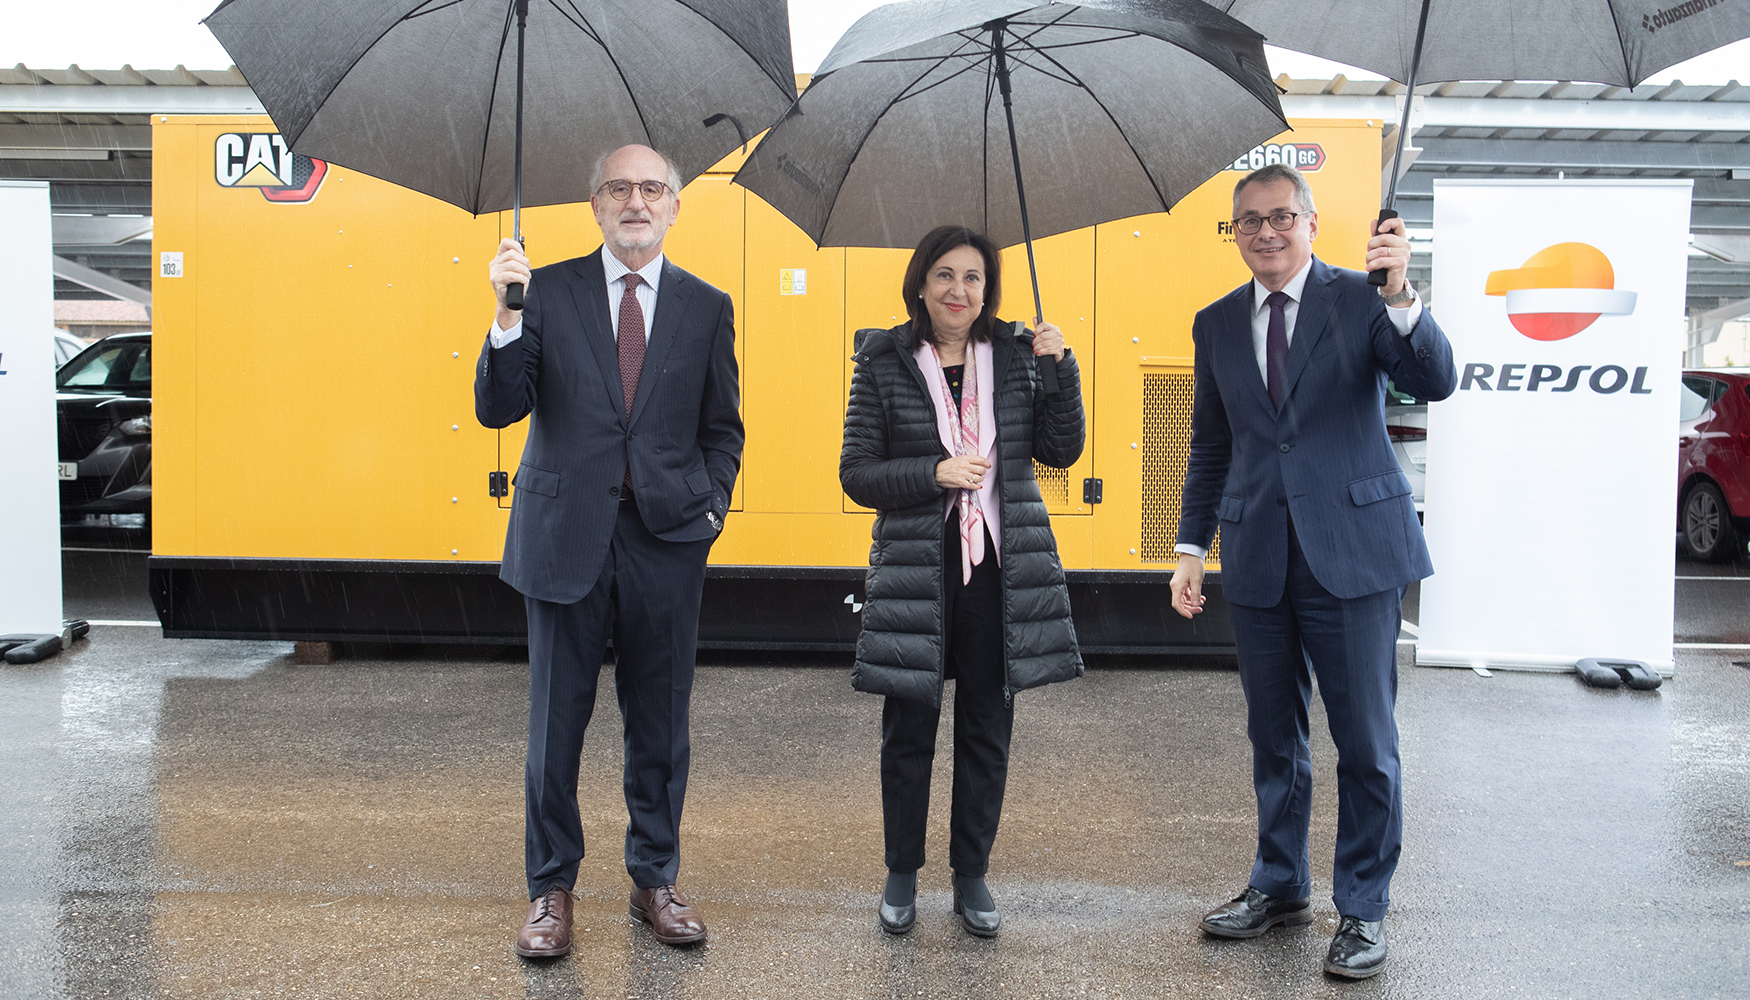 De izquierda a derecha: Antonio Brufau, presidente de Repsol, Margarita Robles, ministra de Defensa, y Pierre-Nicola Fovini, CEO de Finanzauto...